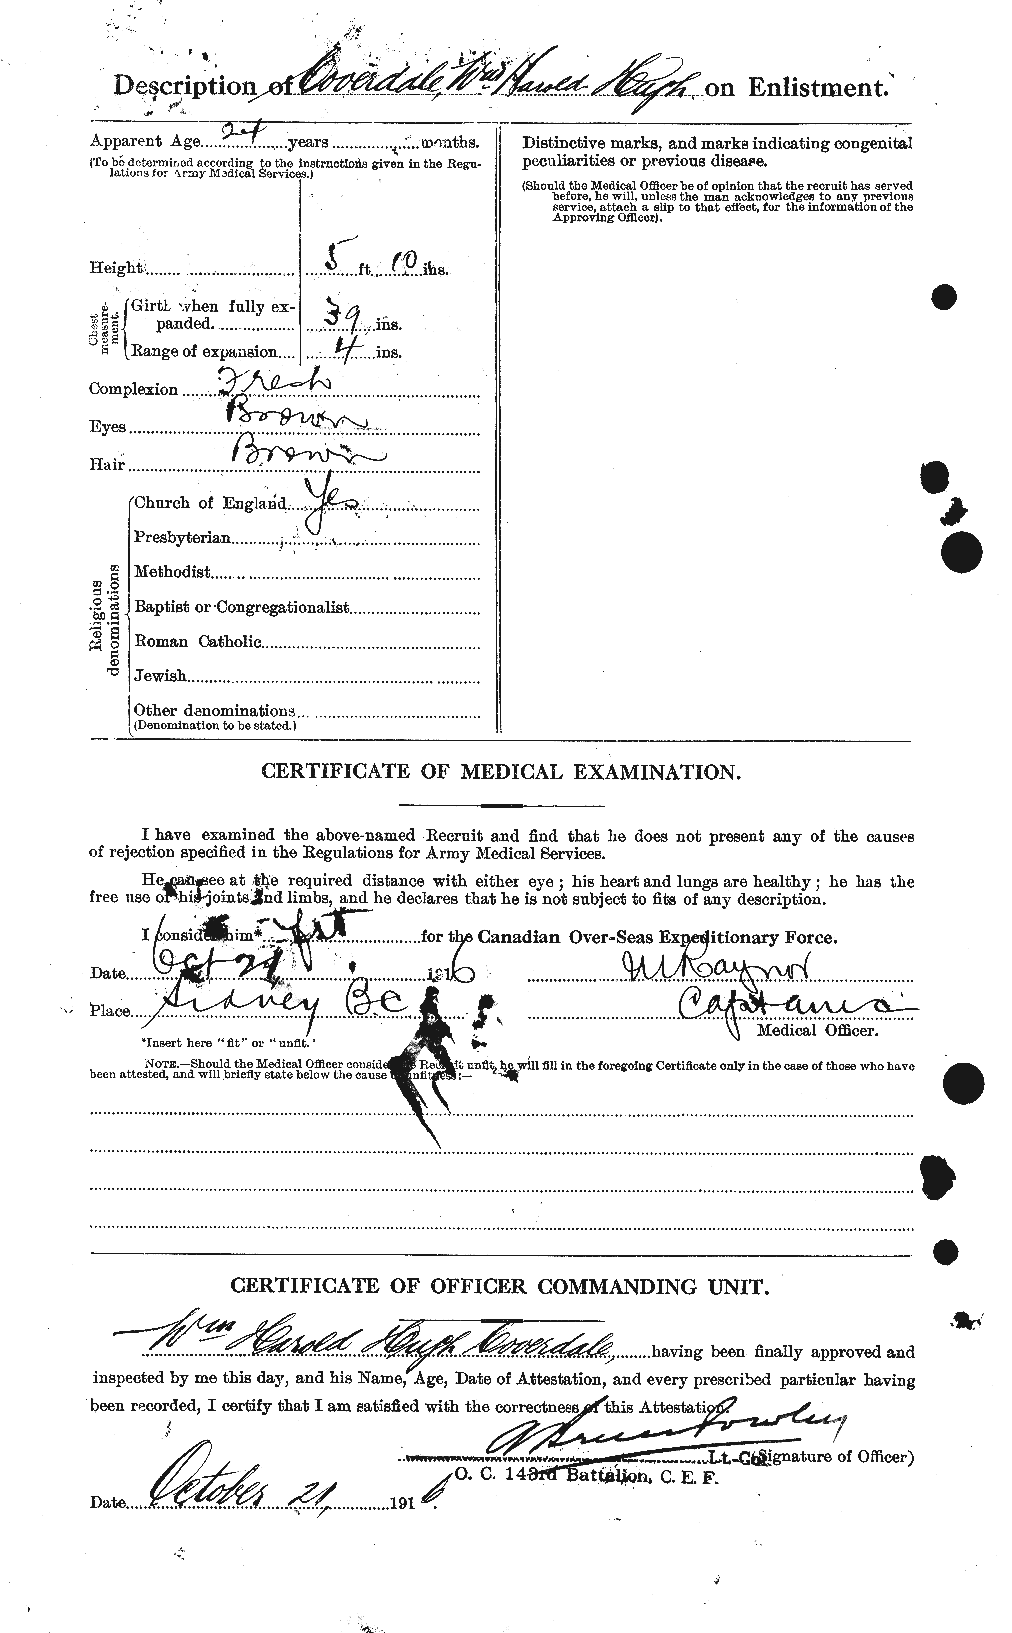 Dossiers du Personnel de la Première Guerre mondiale - CEC 059291b